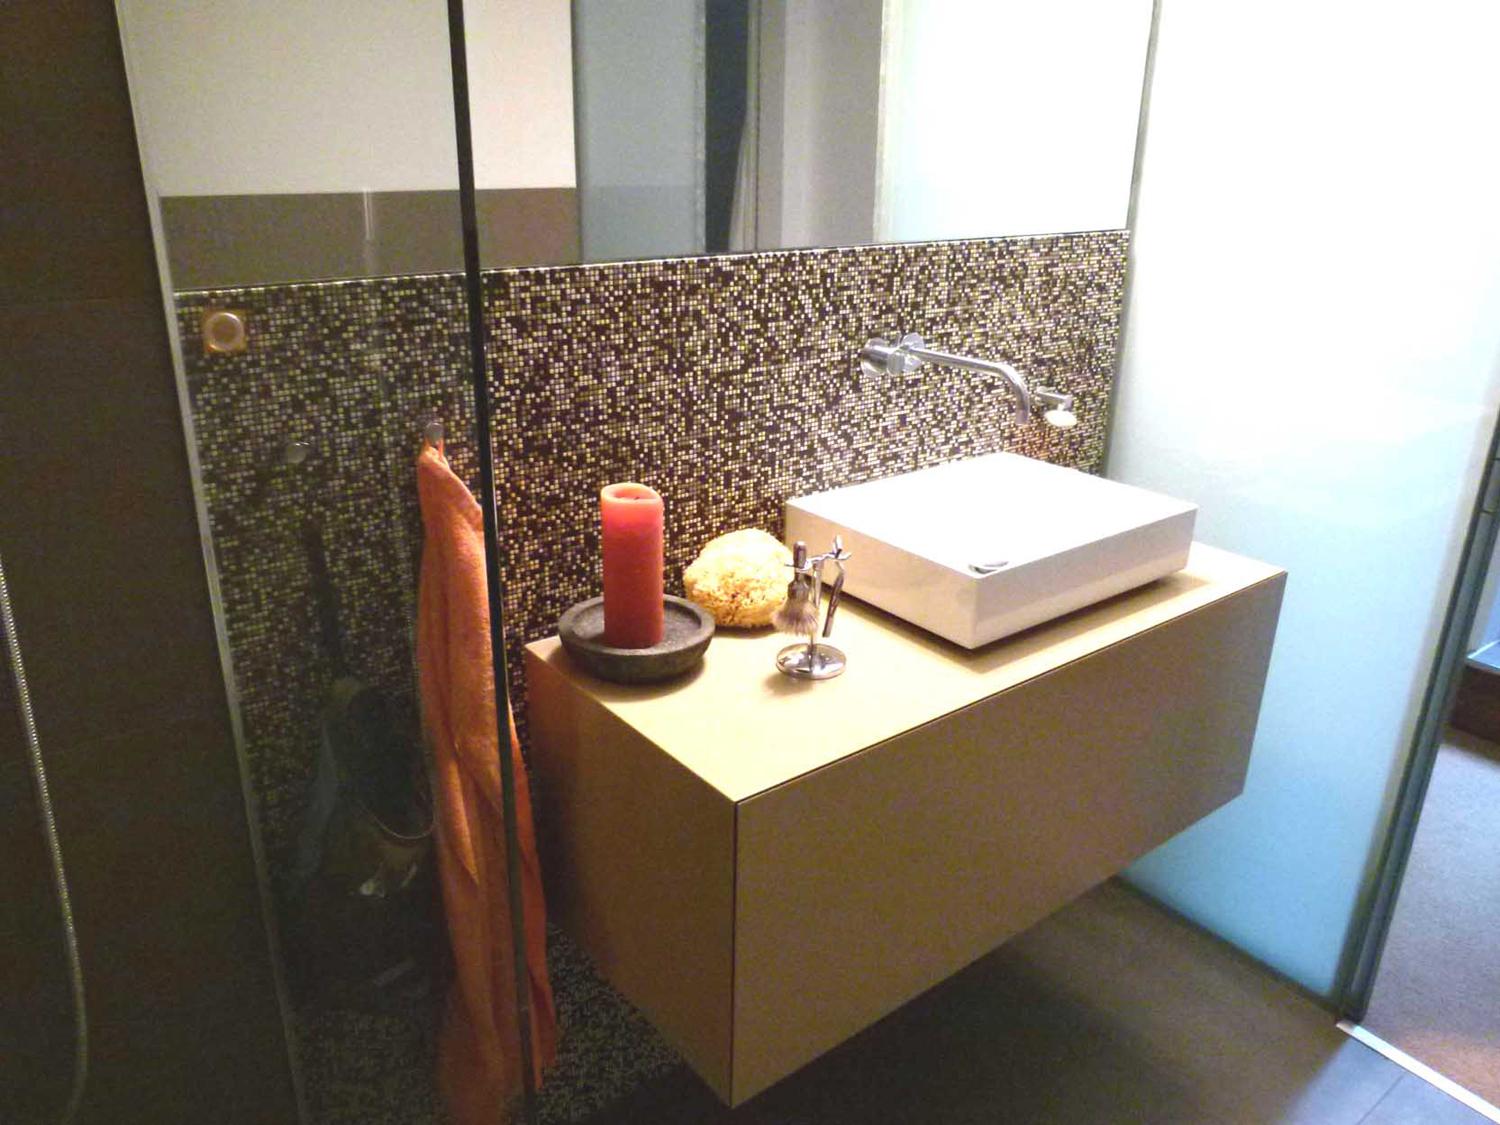 Badezimmer Waschbecken #bad #badezimmer #waschtisch #waschbecken #raumdesign #innenarchitektur ©Silja Zürner